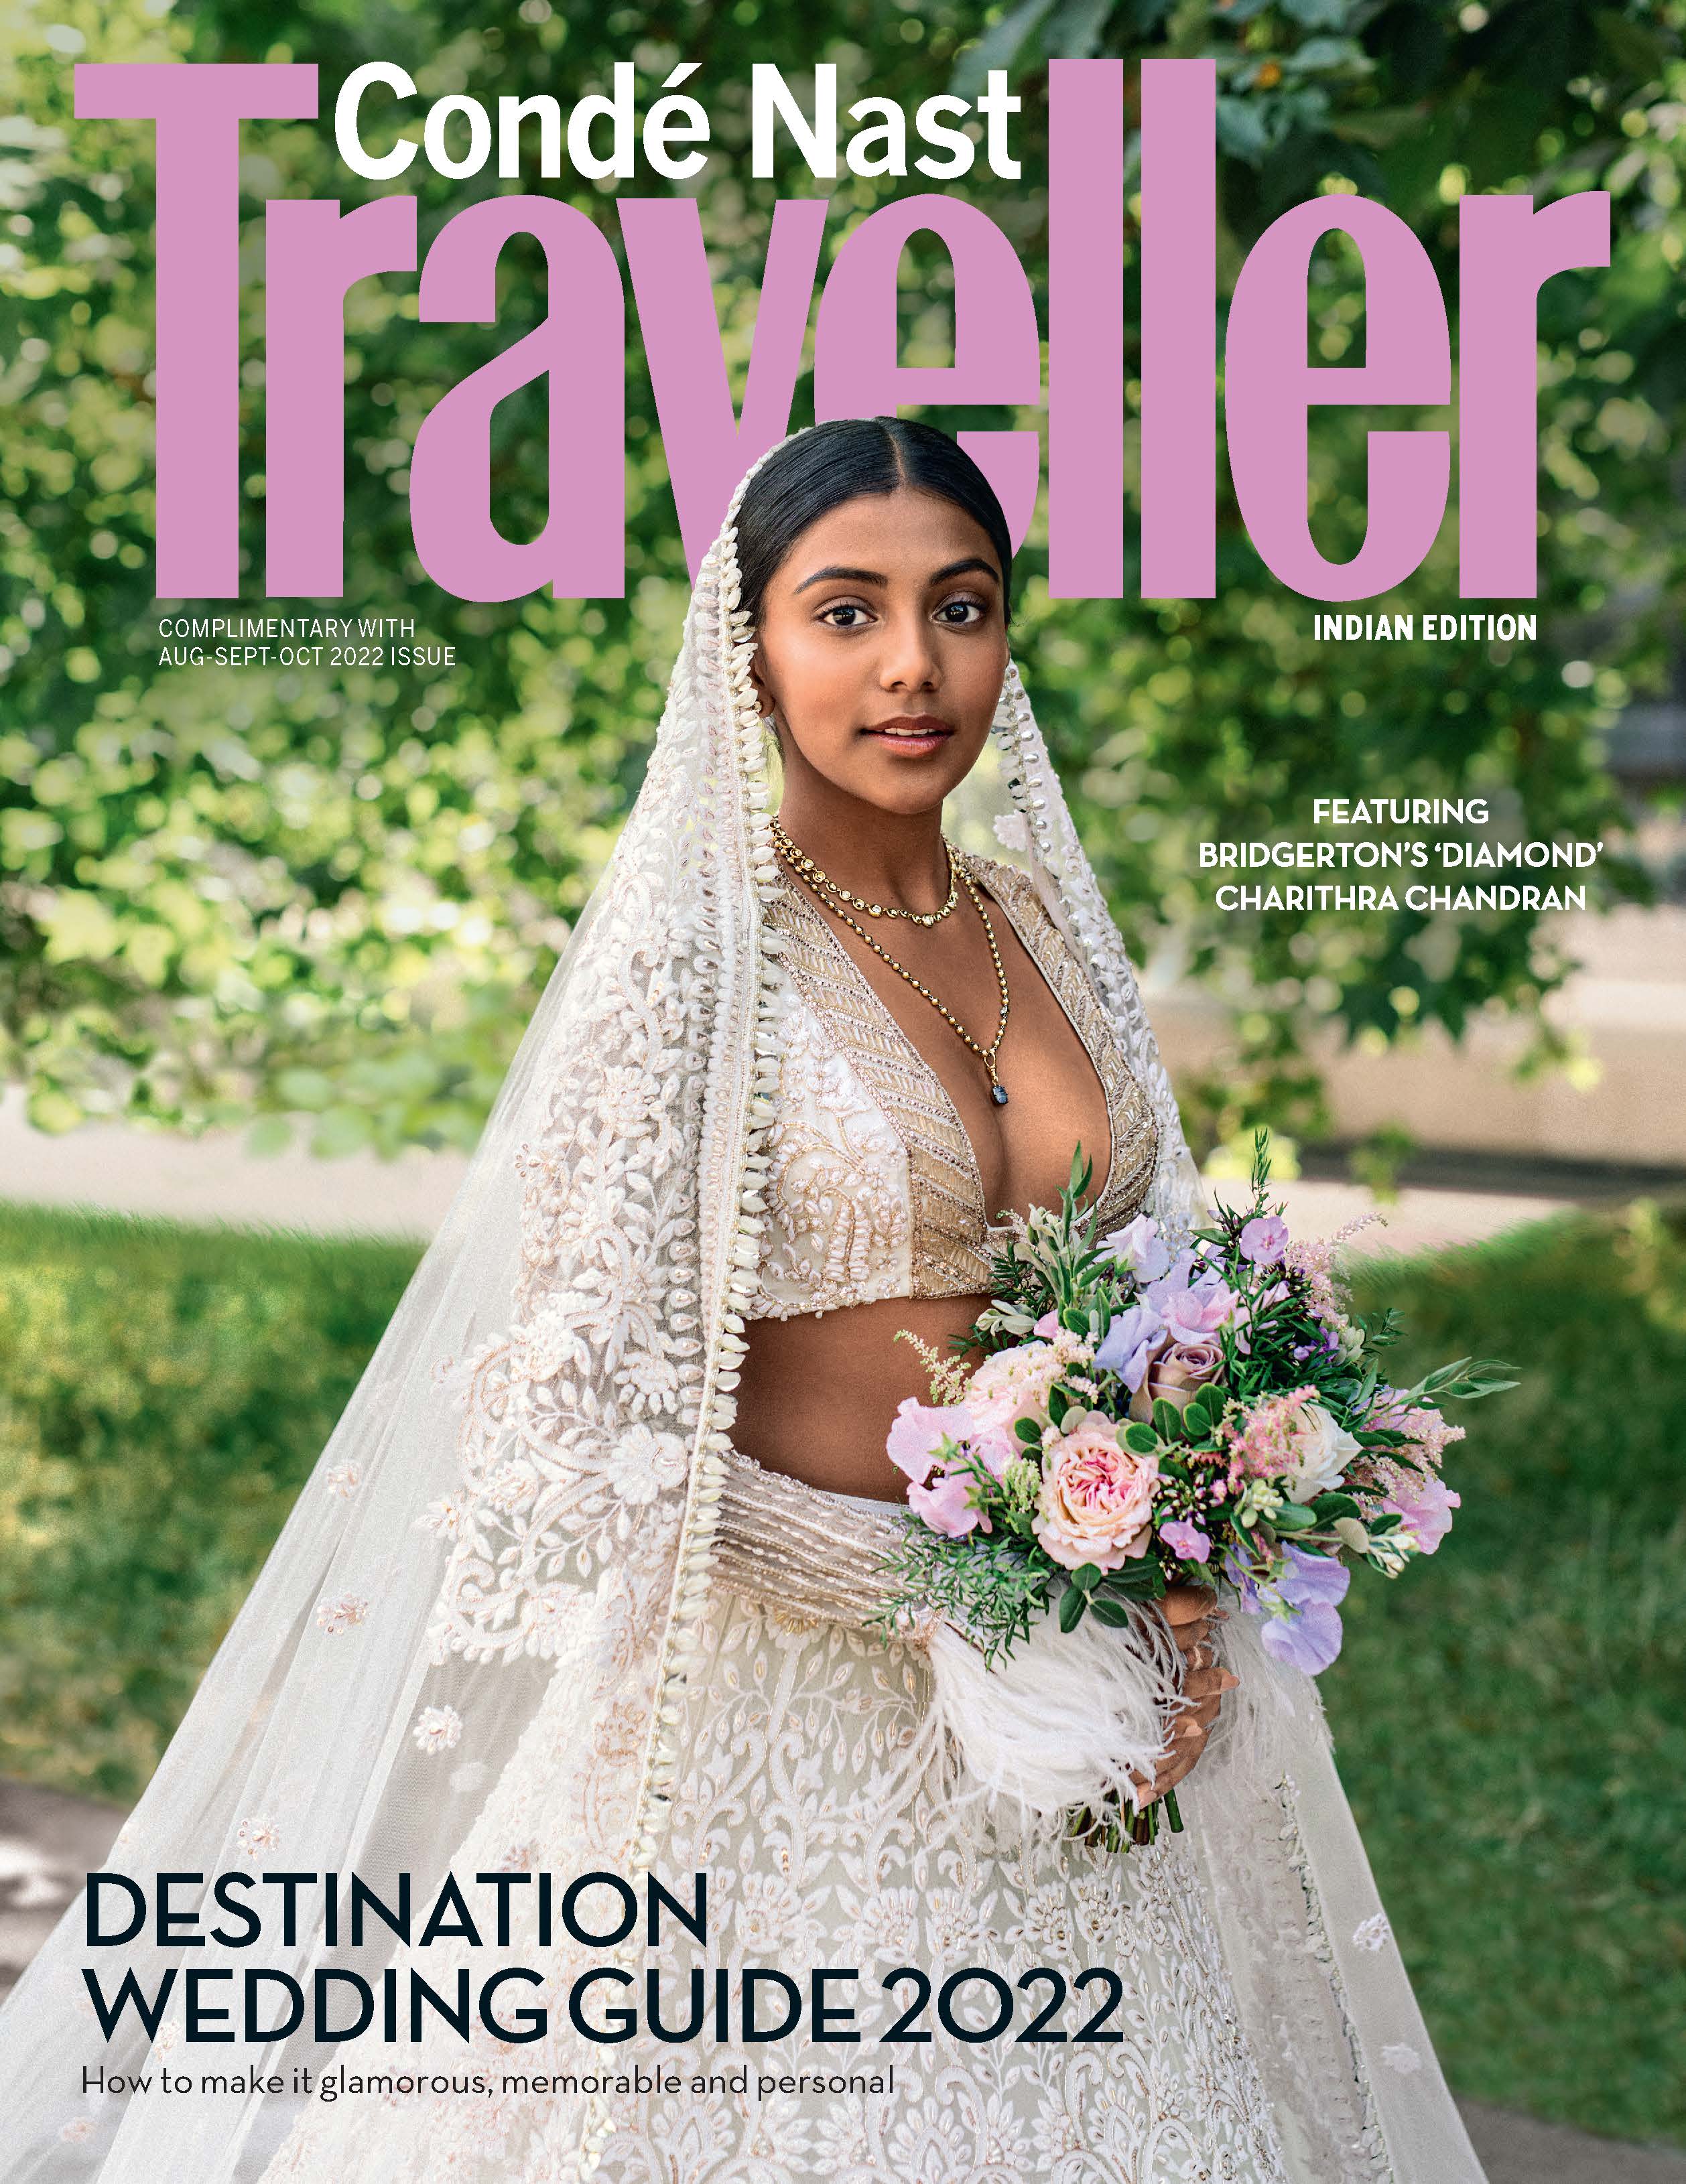 Bridgerton’s ‘Diamond’ Charithra Chandran Dazzles On The CNT Destination Wedding Guide 2022 Cover!